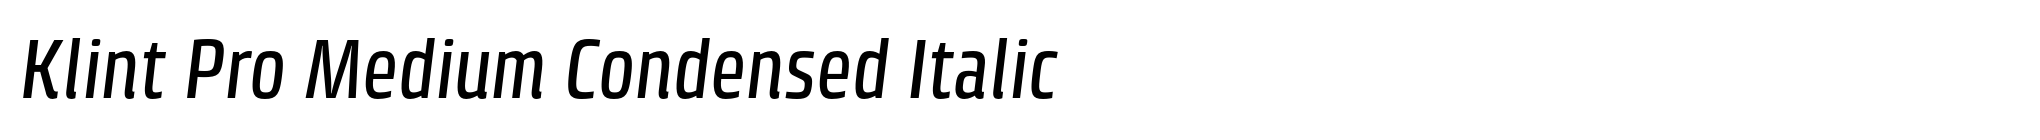 Klint Pro Medium Condensed Italic image